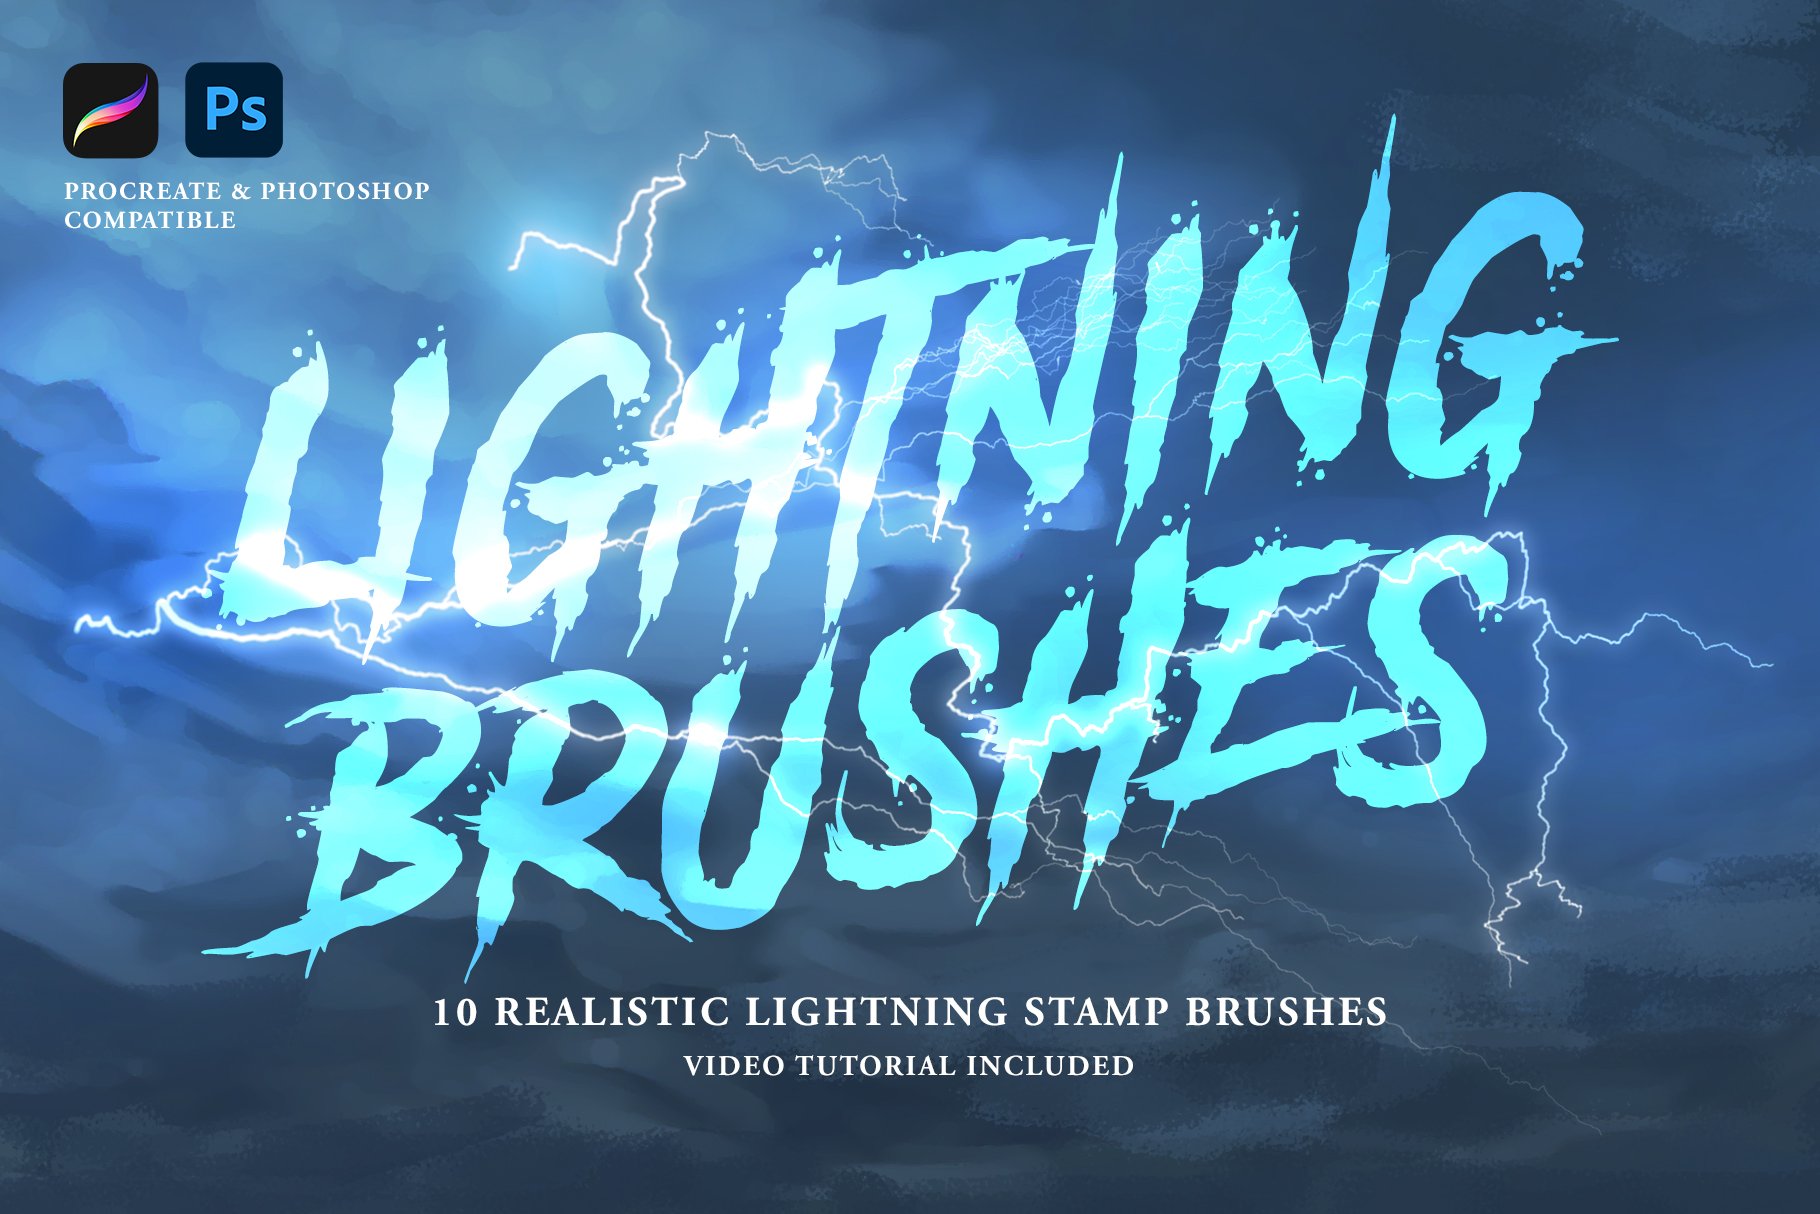 Realistic Lightning Pro Brushescover image.